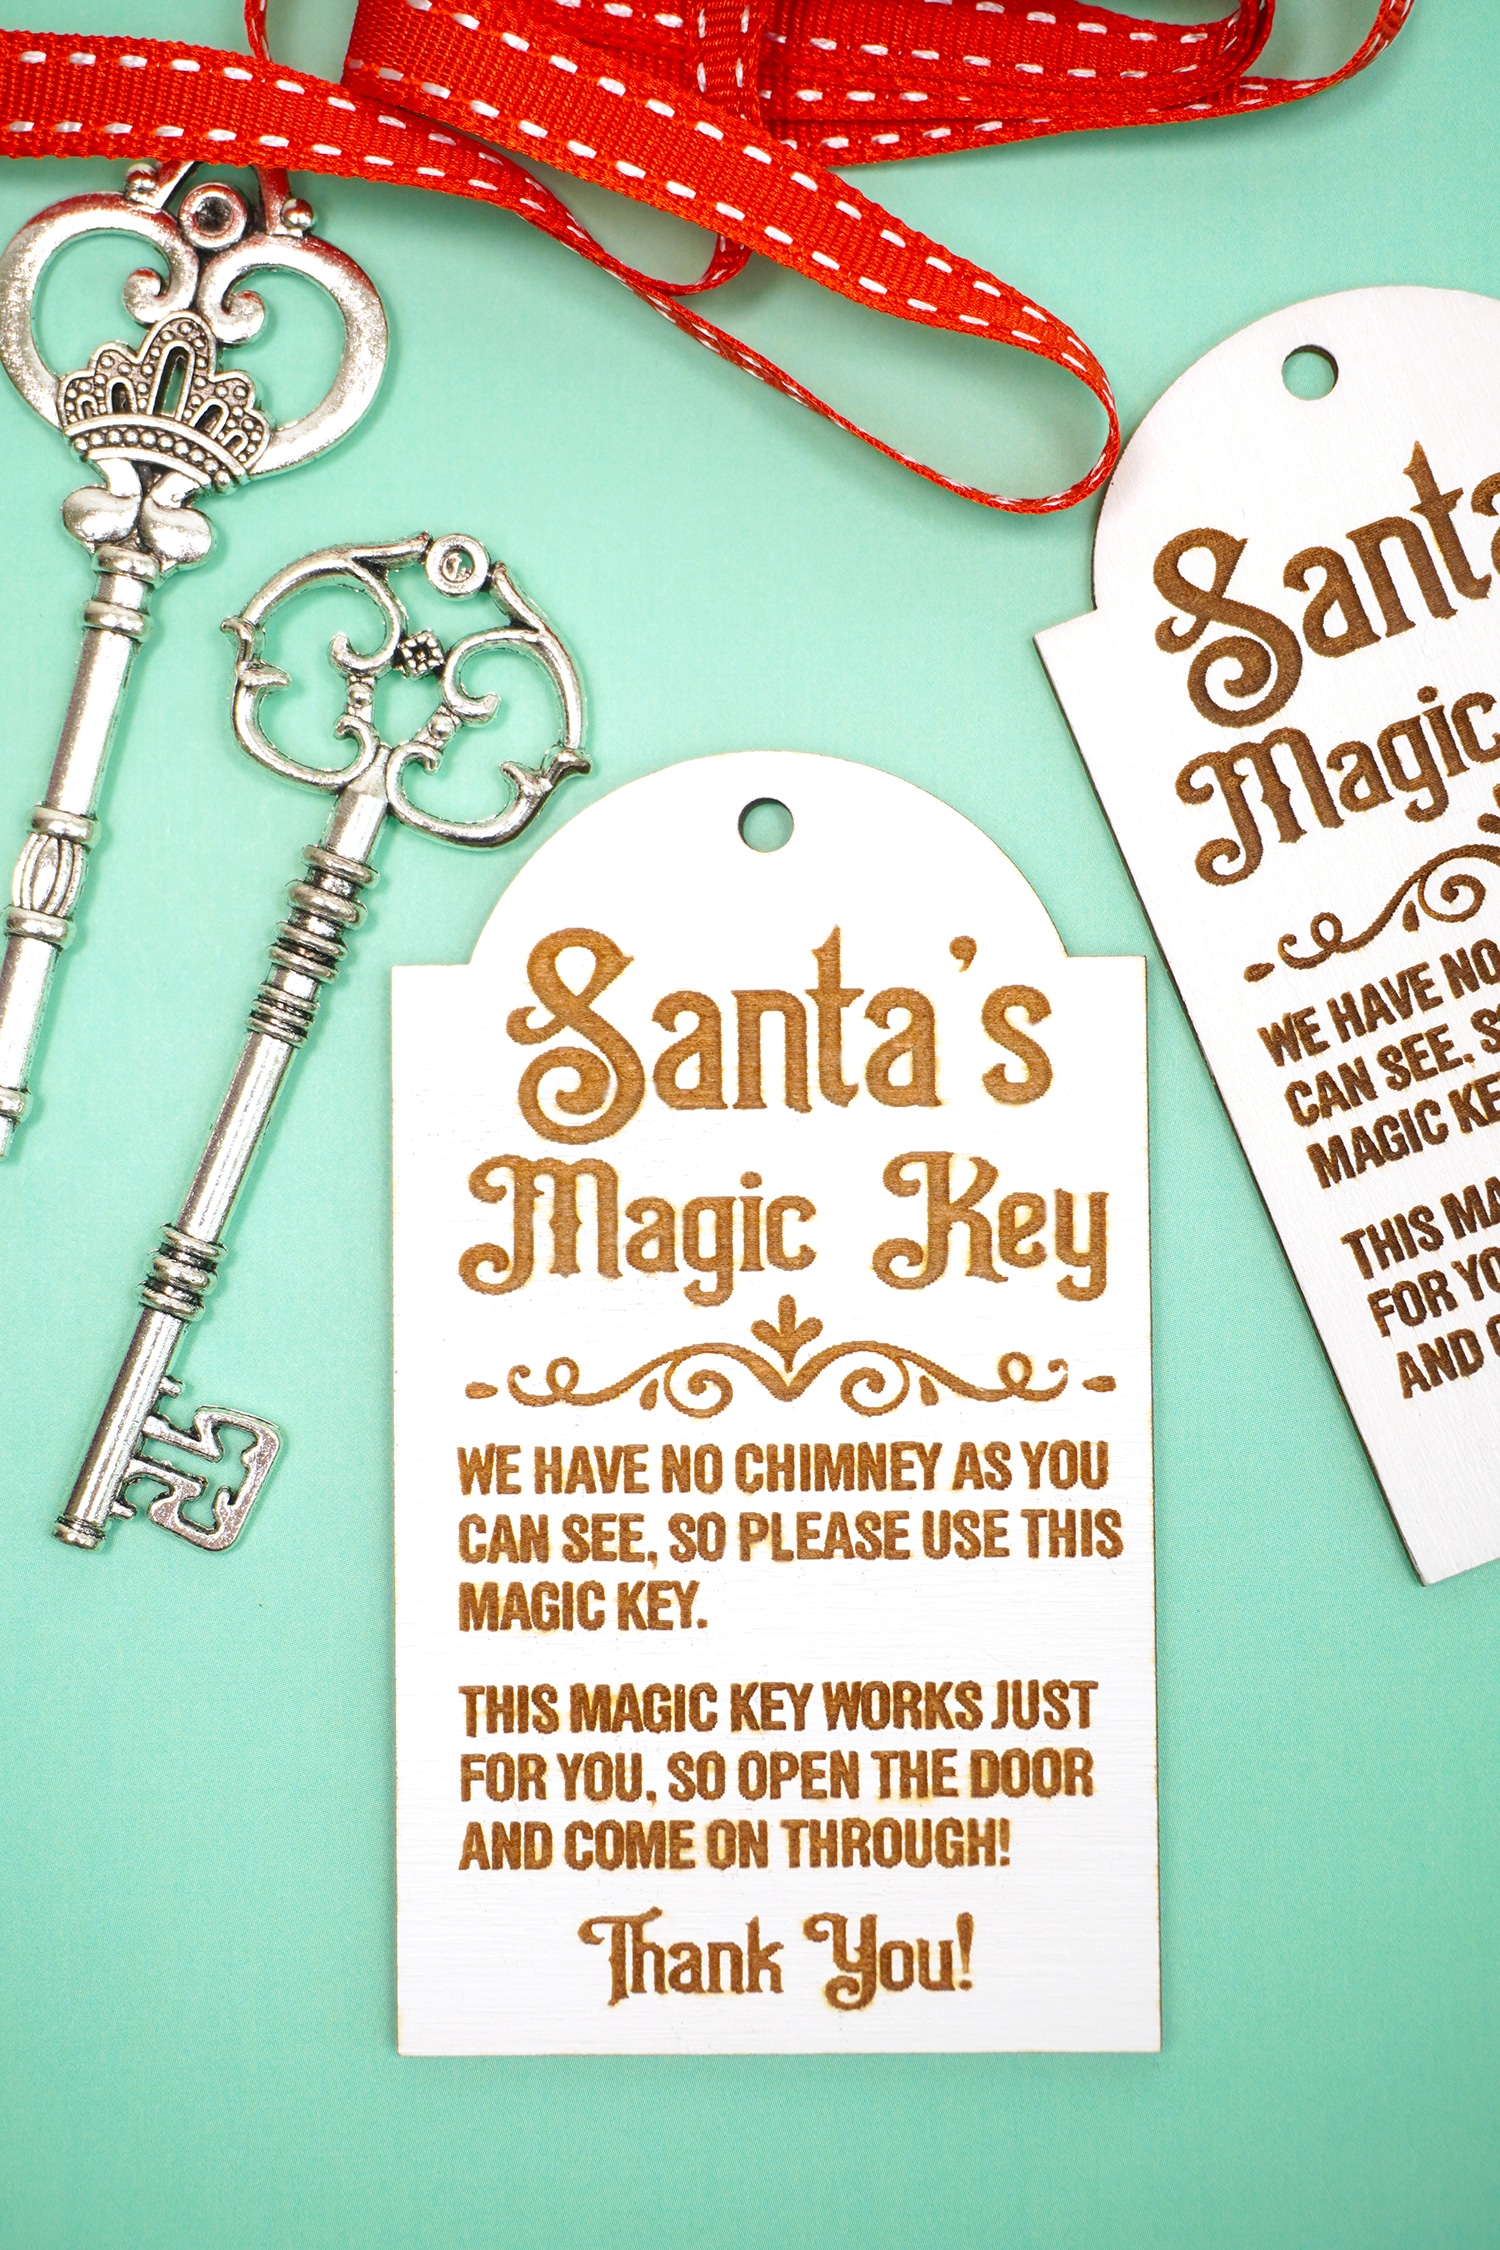 Santa's Magical Key Editable Template, Magic Key Tag No Chimney